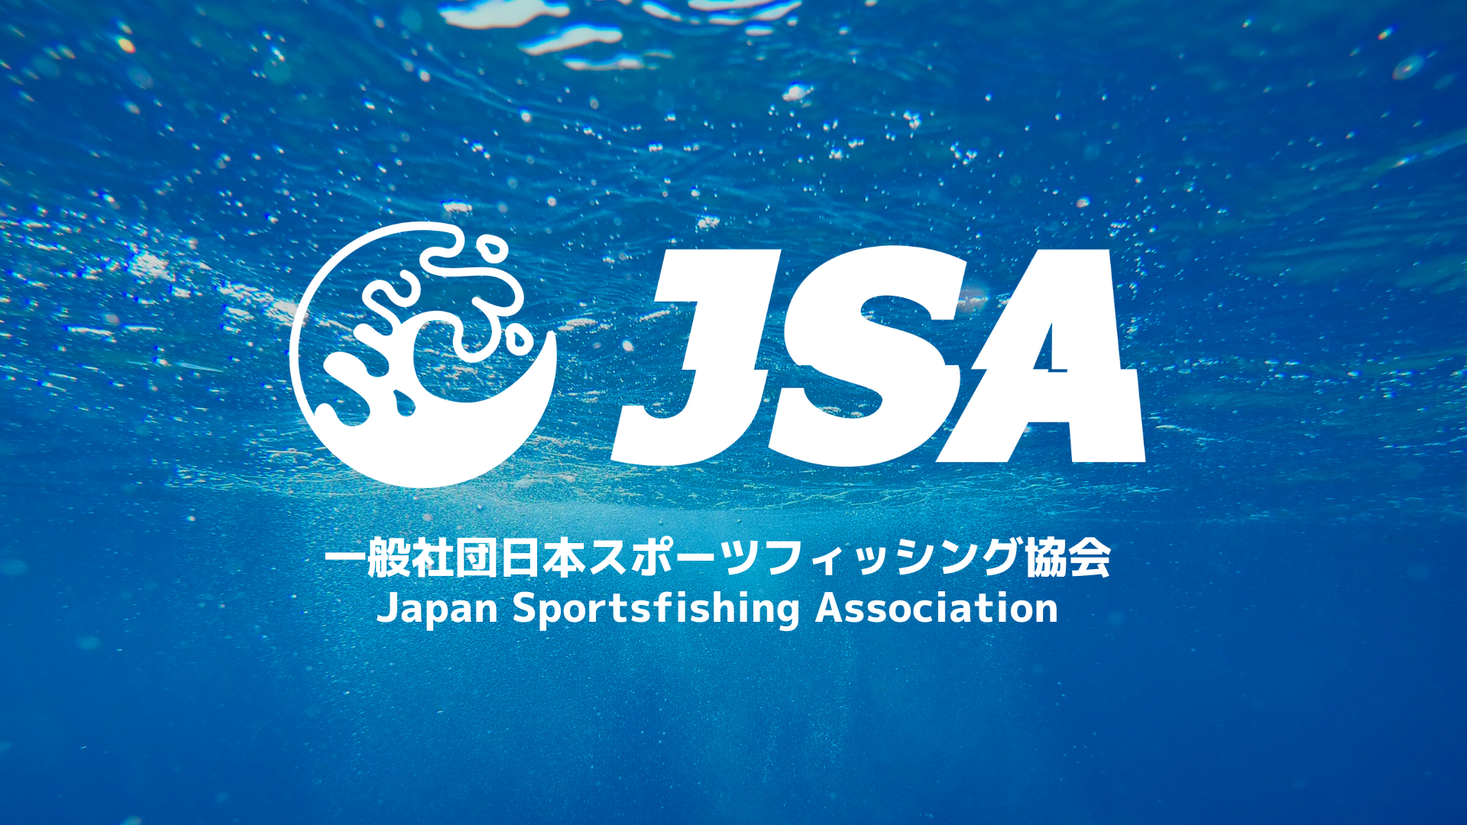 一般社団法人日本スポーツフィッシング協会設立のお知らせ